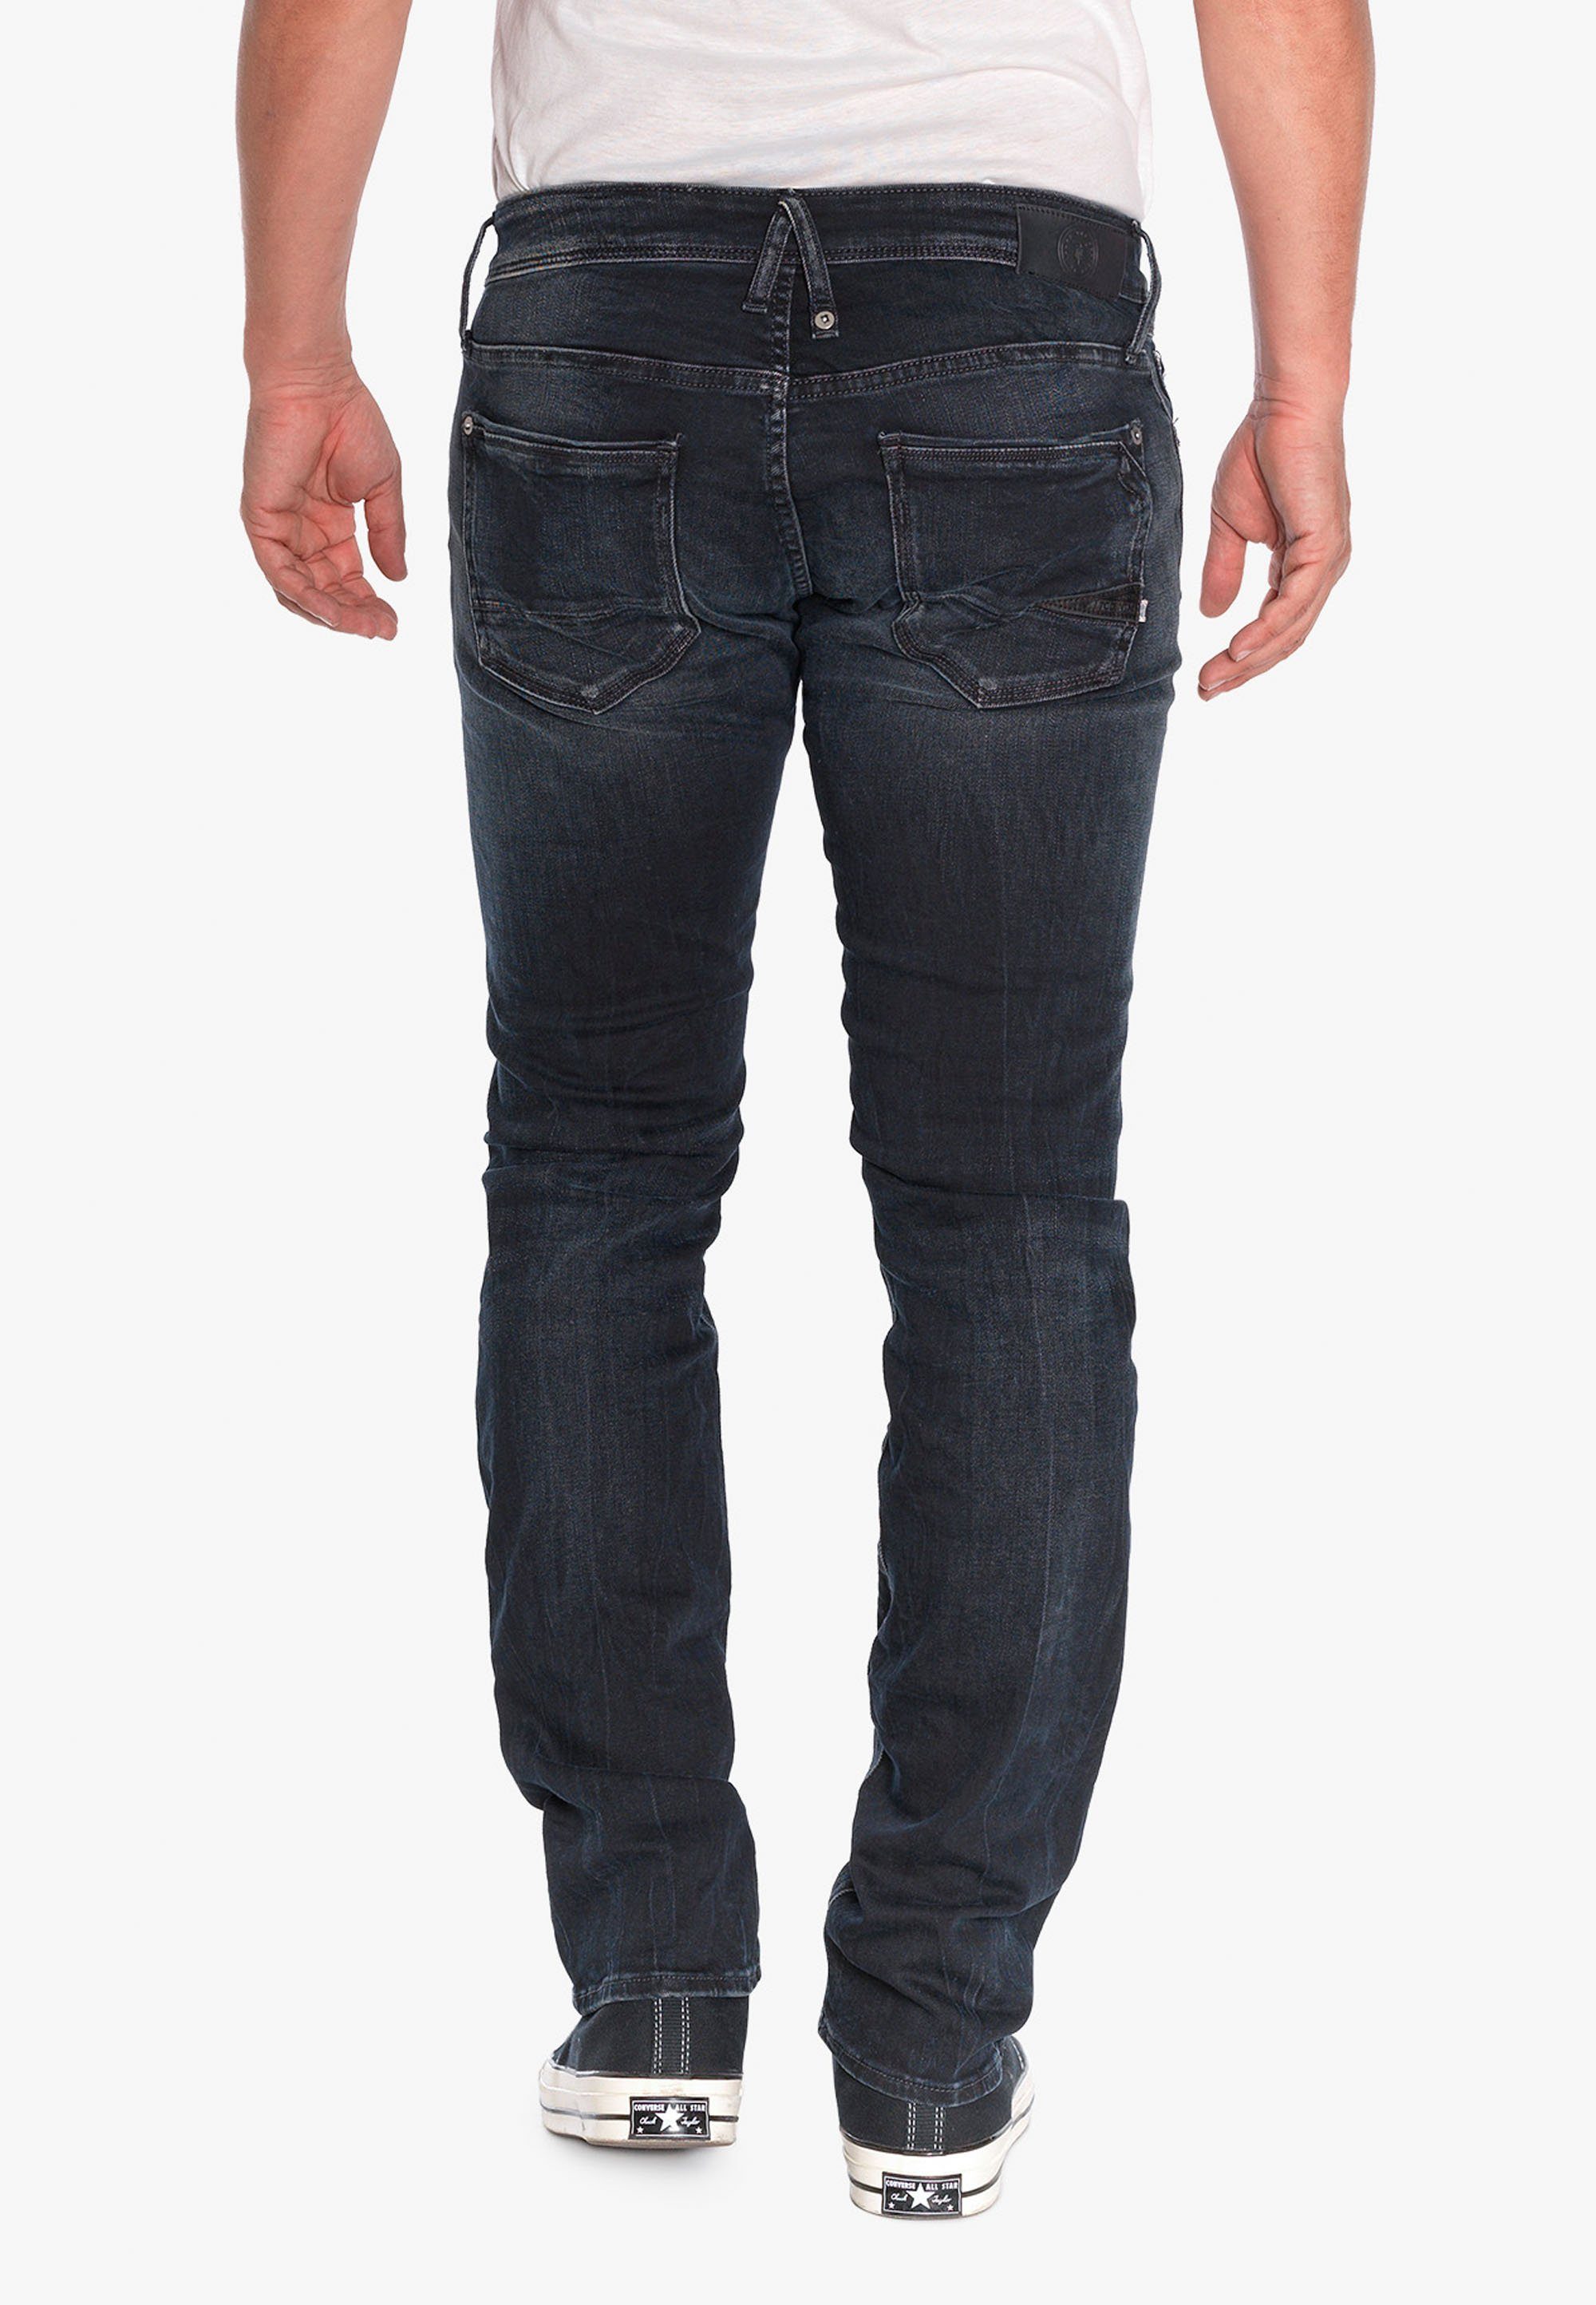 Le Temps 5-Pocket-Design Cerises im Bequeme klassischen Jeans Des